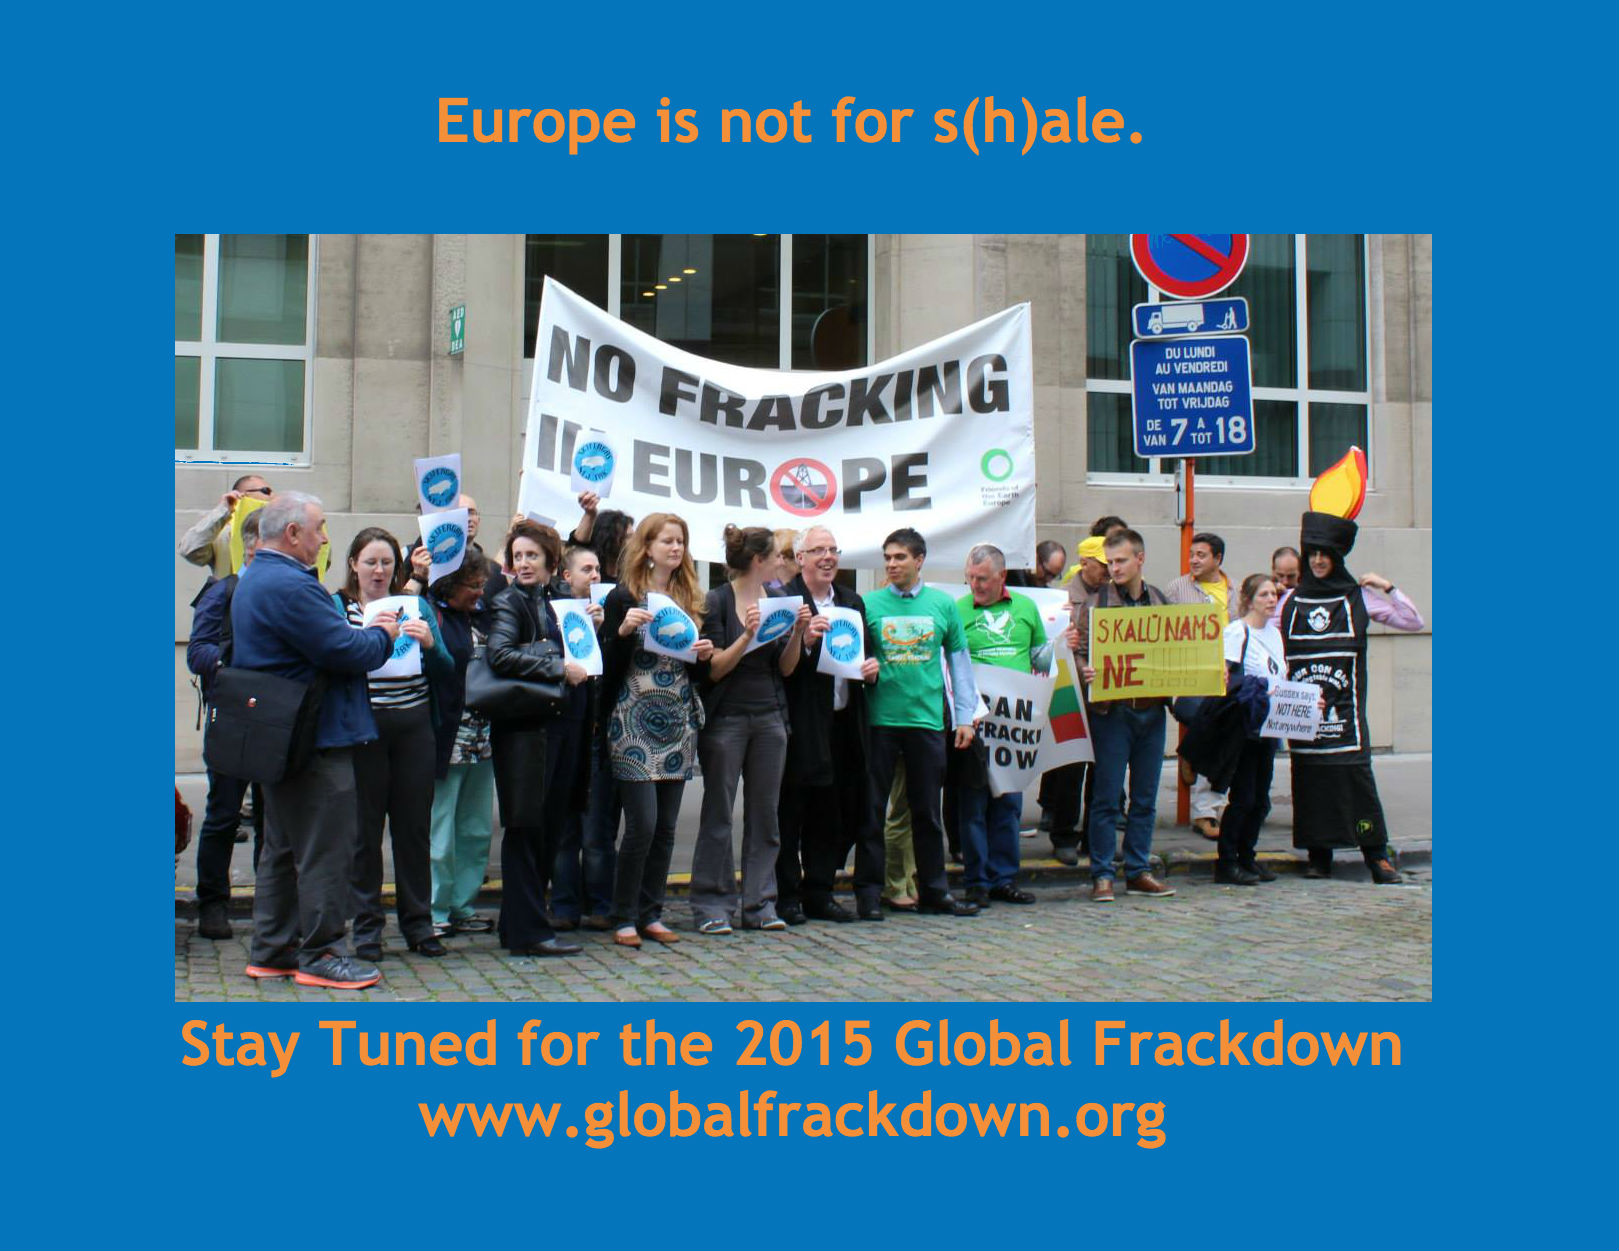 Join the Global Frackdown